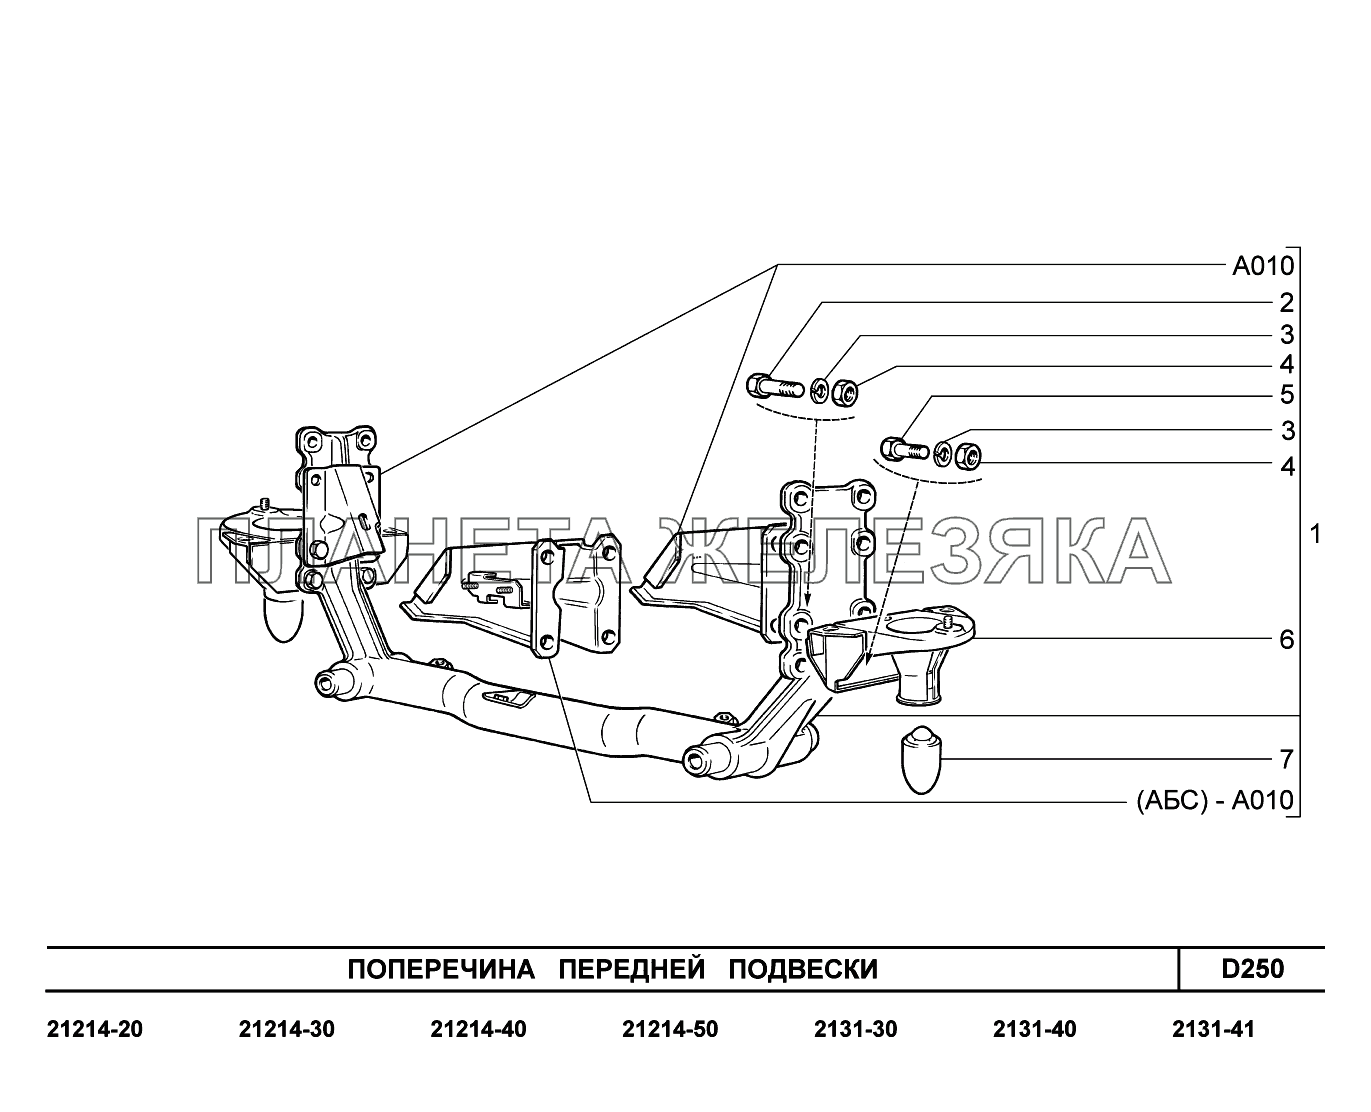 D250. Поперечина передней подвески LADA 4x4